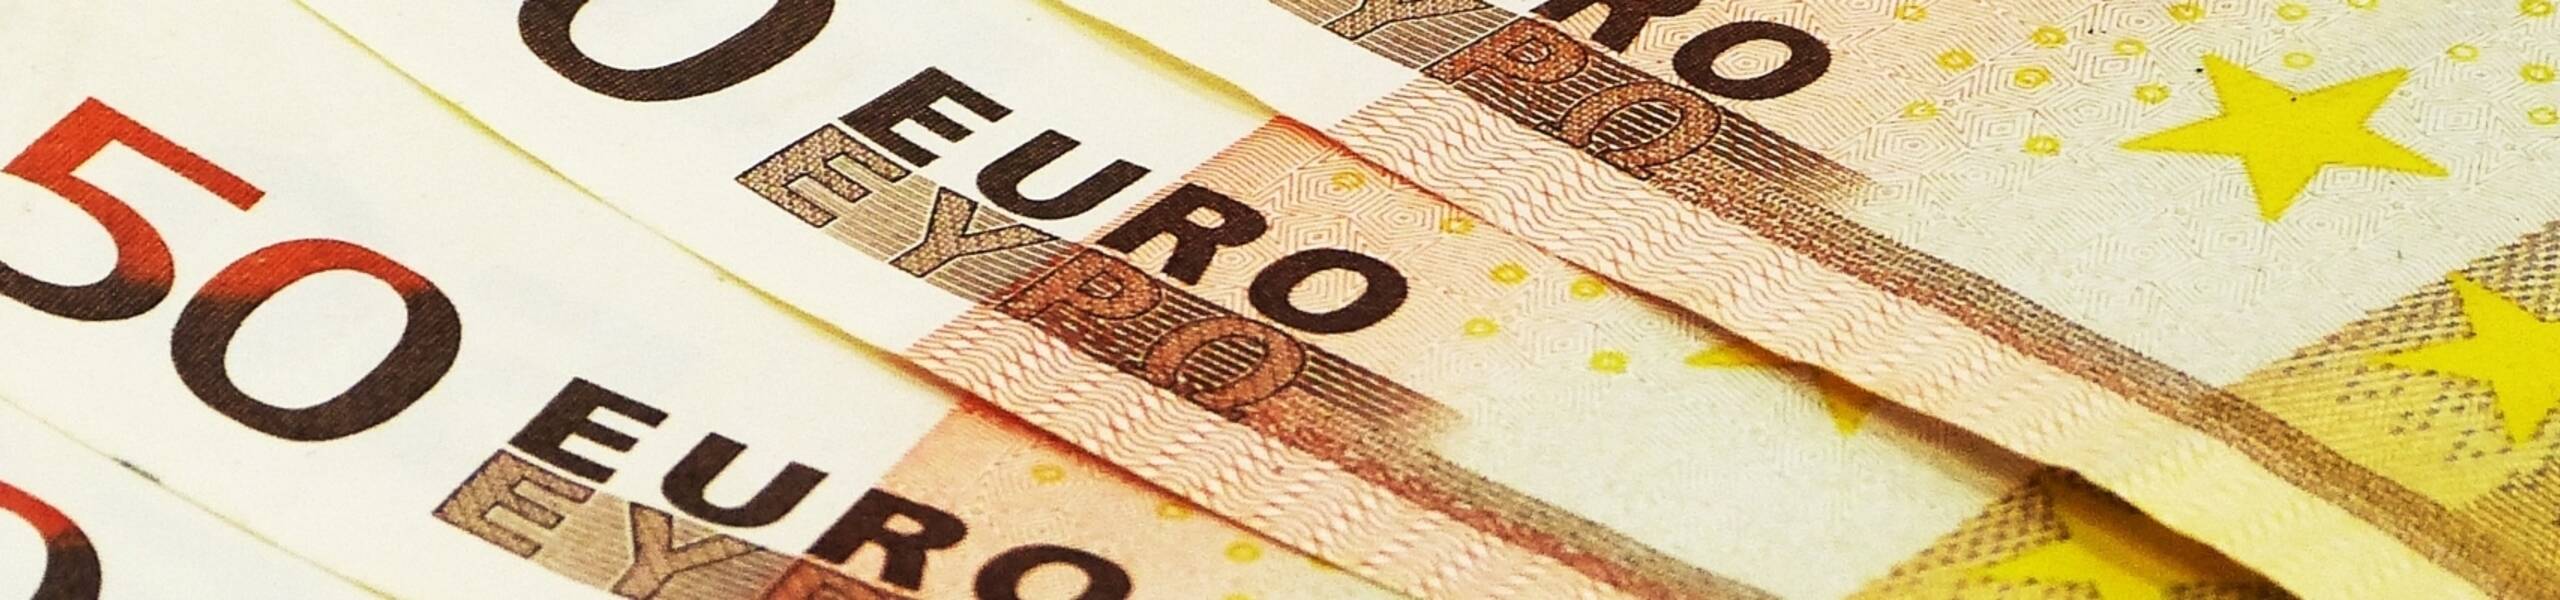 Preços ao Produtor caem na zona do euro